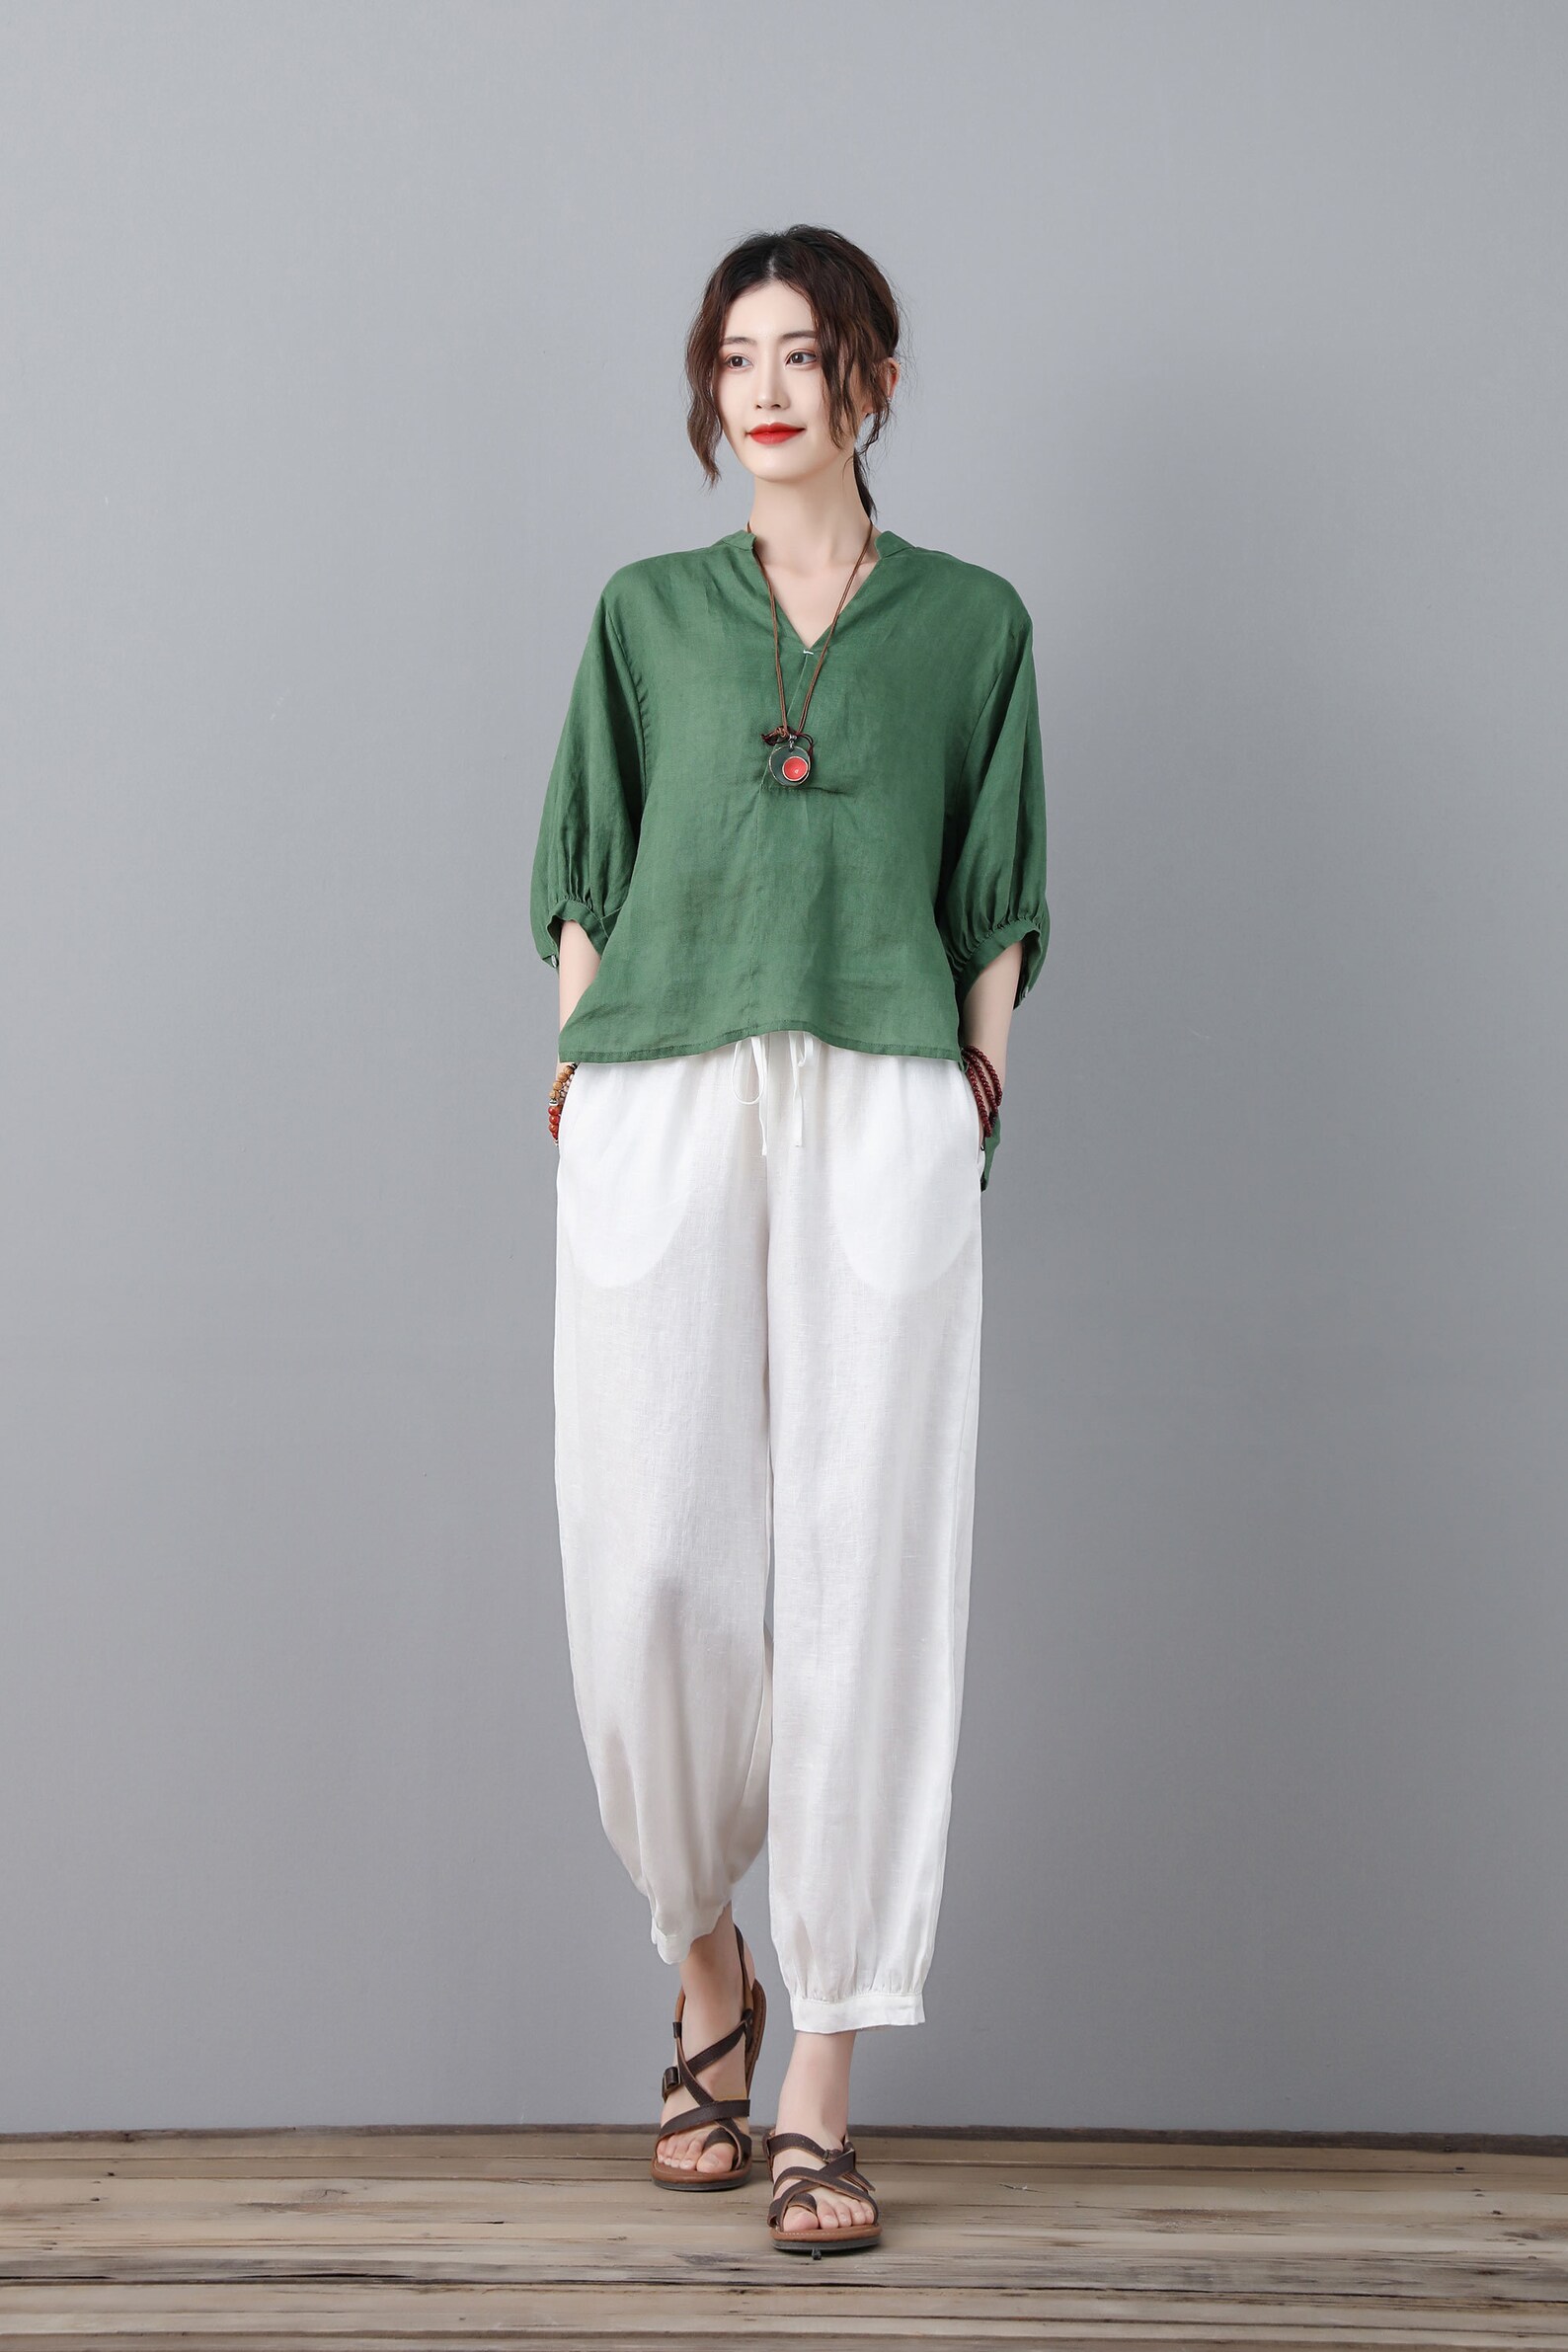 Linen blouse green linen tops Linen blouse for women | Etsy